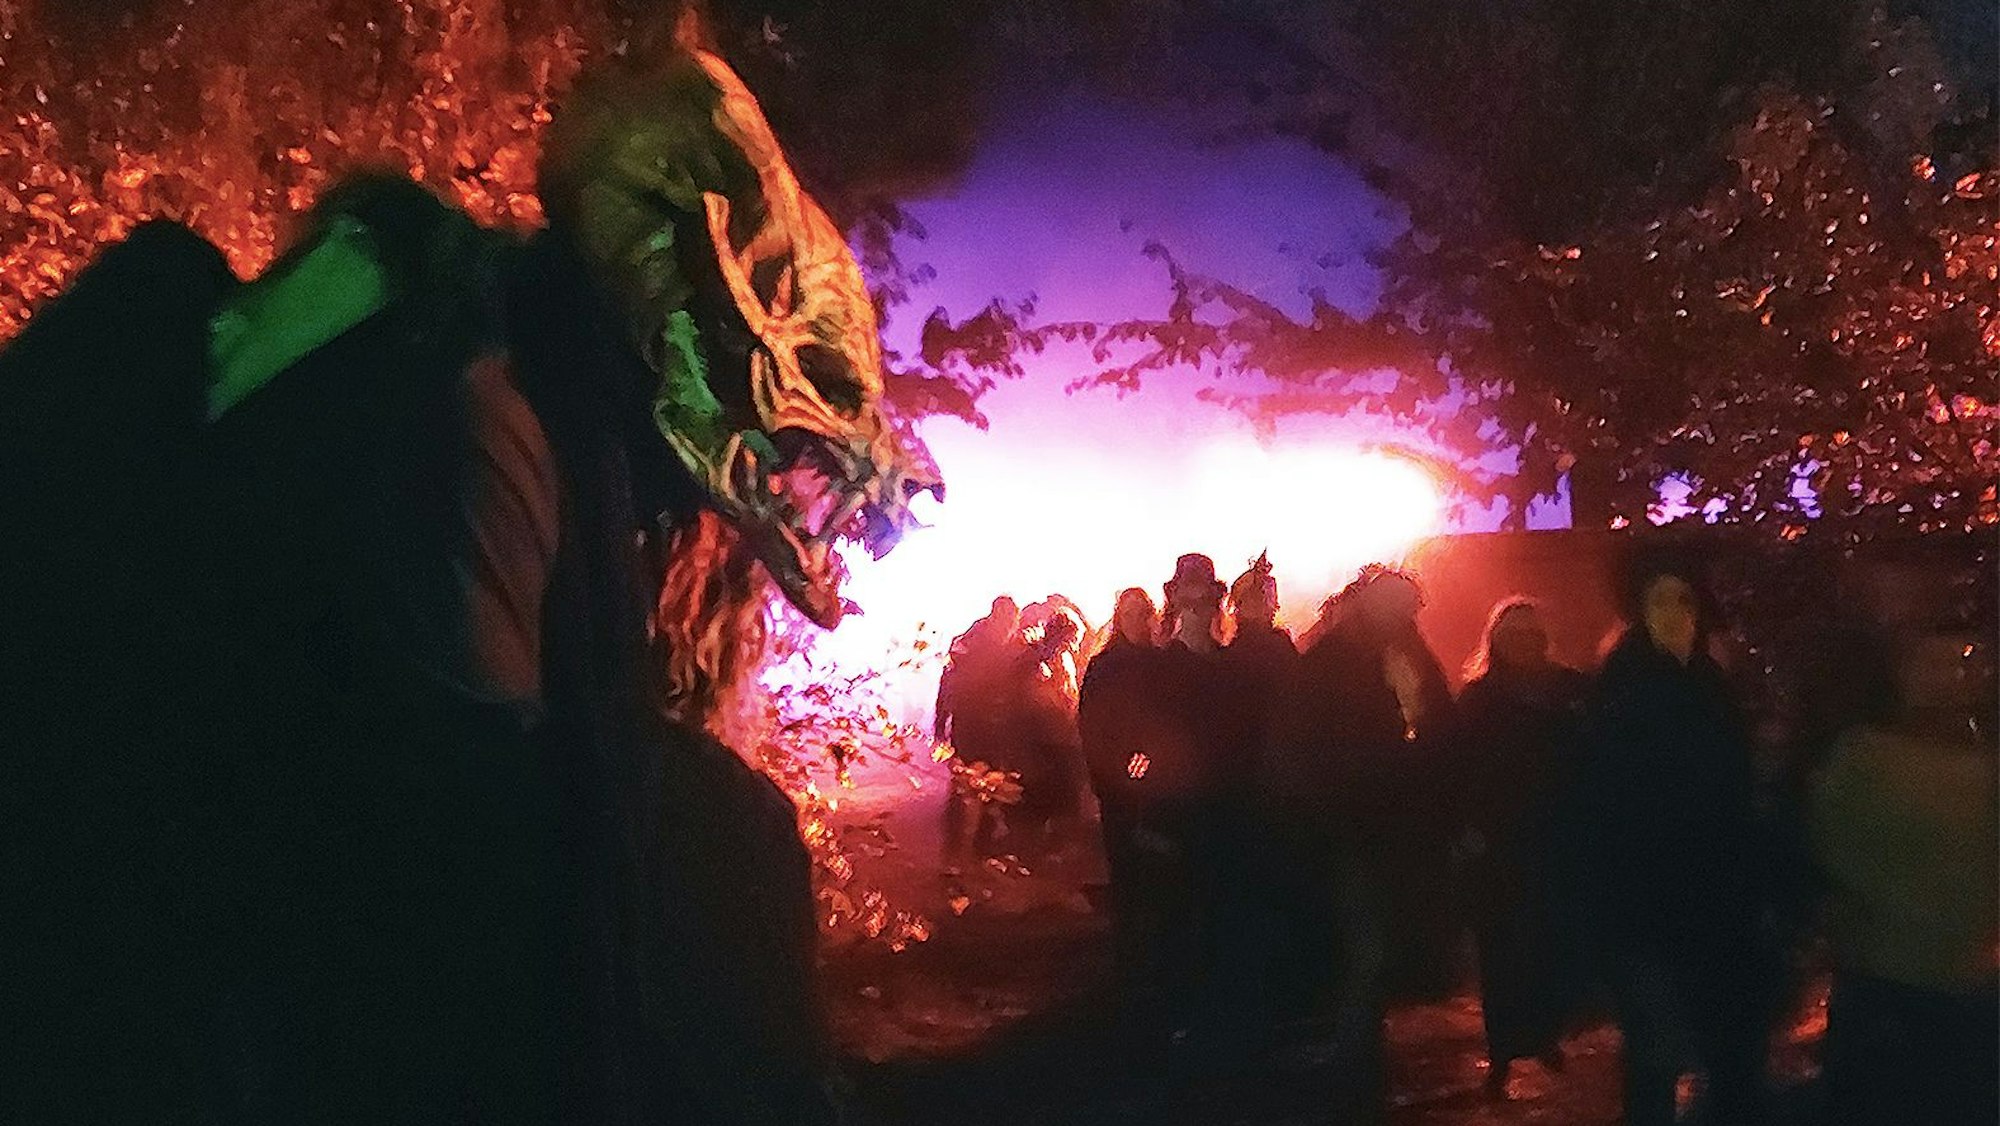 Vorne lauert das maskierte Ungeheuer, während eine Besucherschar vorbeispaziert. Die Szenerie ist in rotes und blaues Licht getaucht.